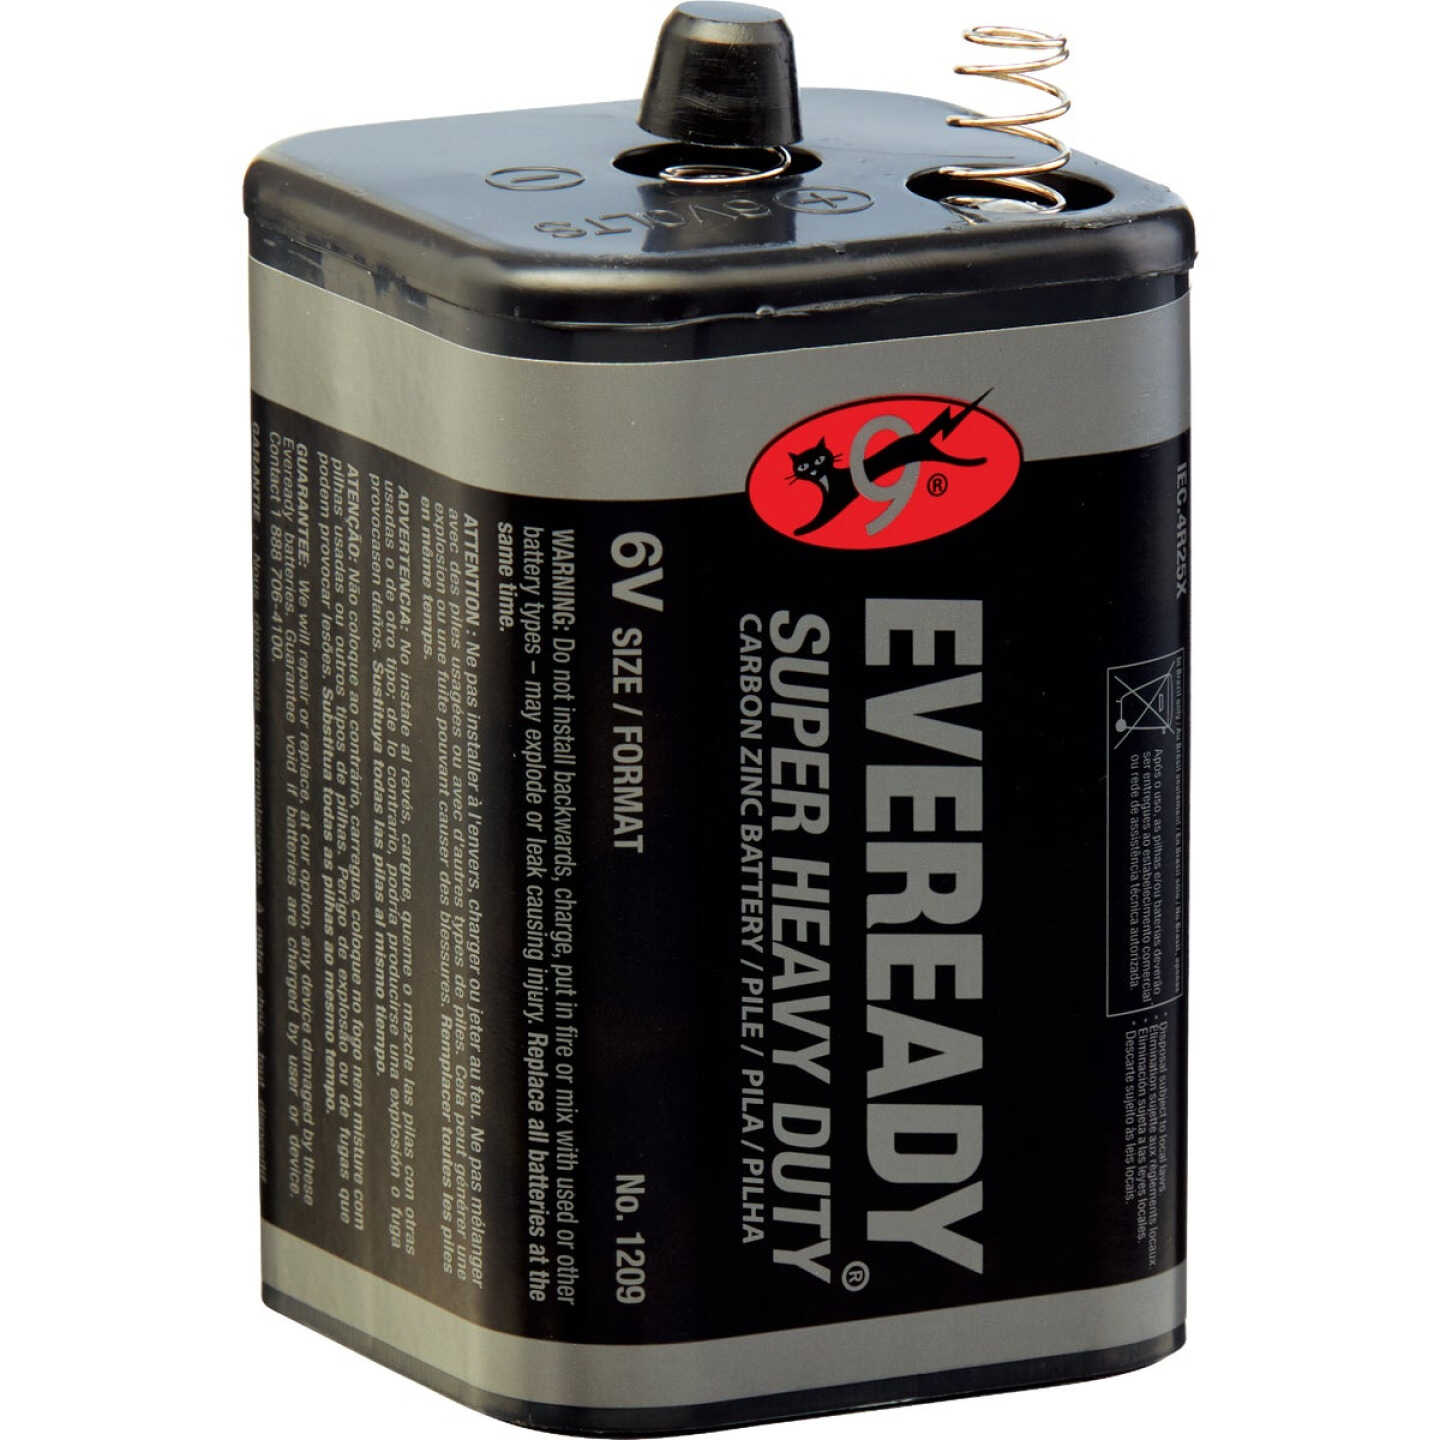 Alkaline (6 volt) Lantern Battery